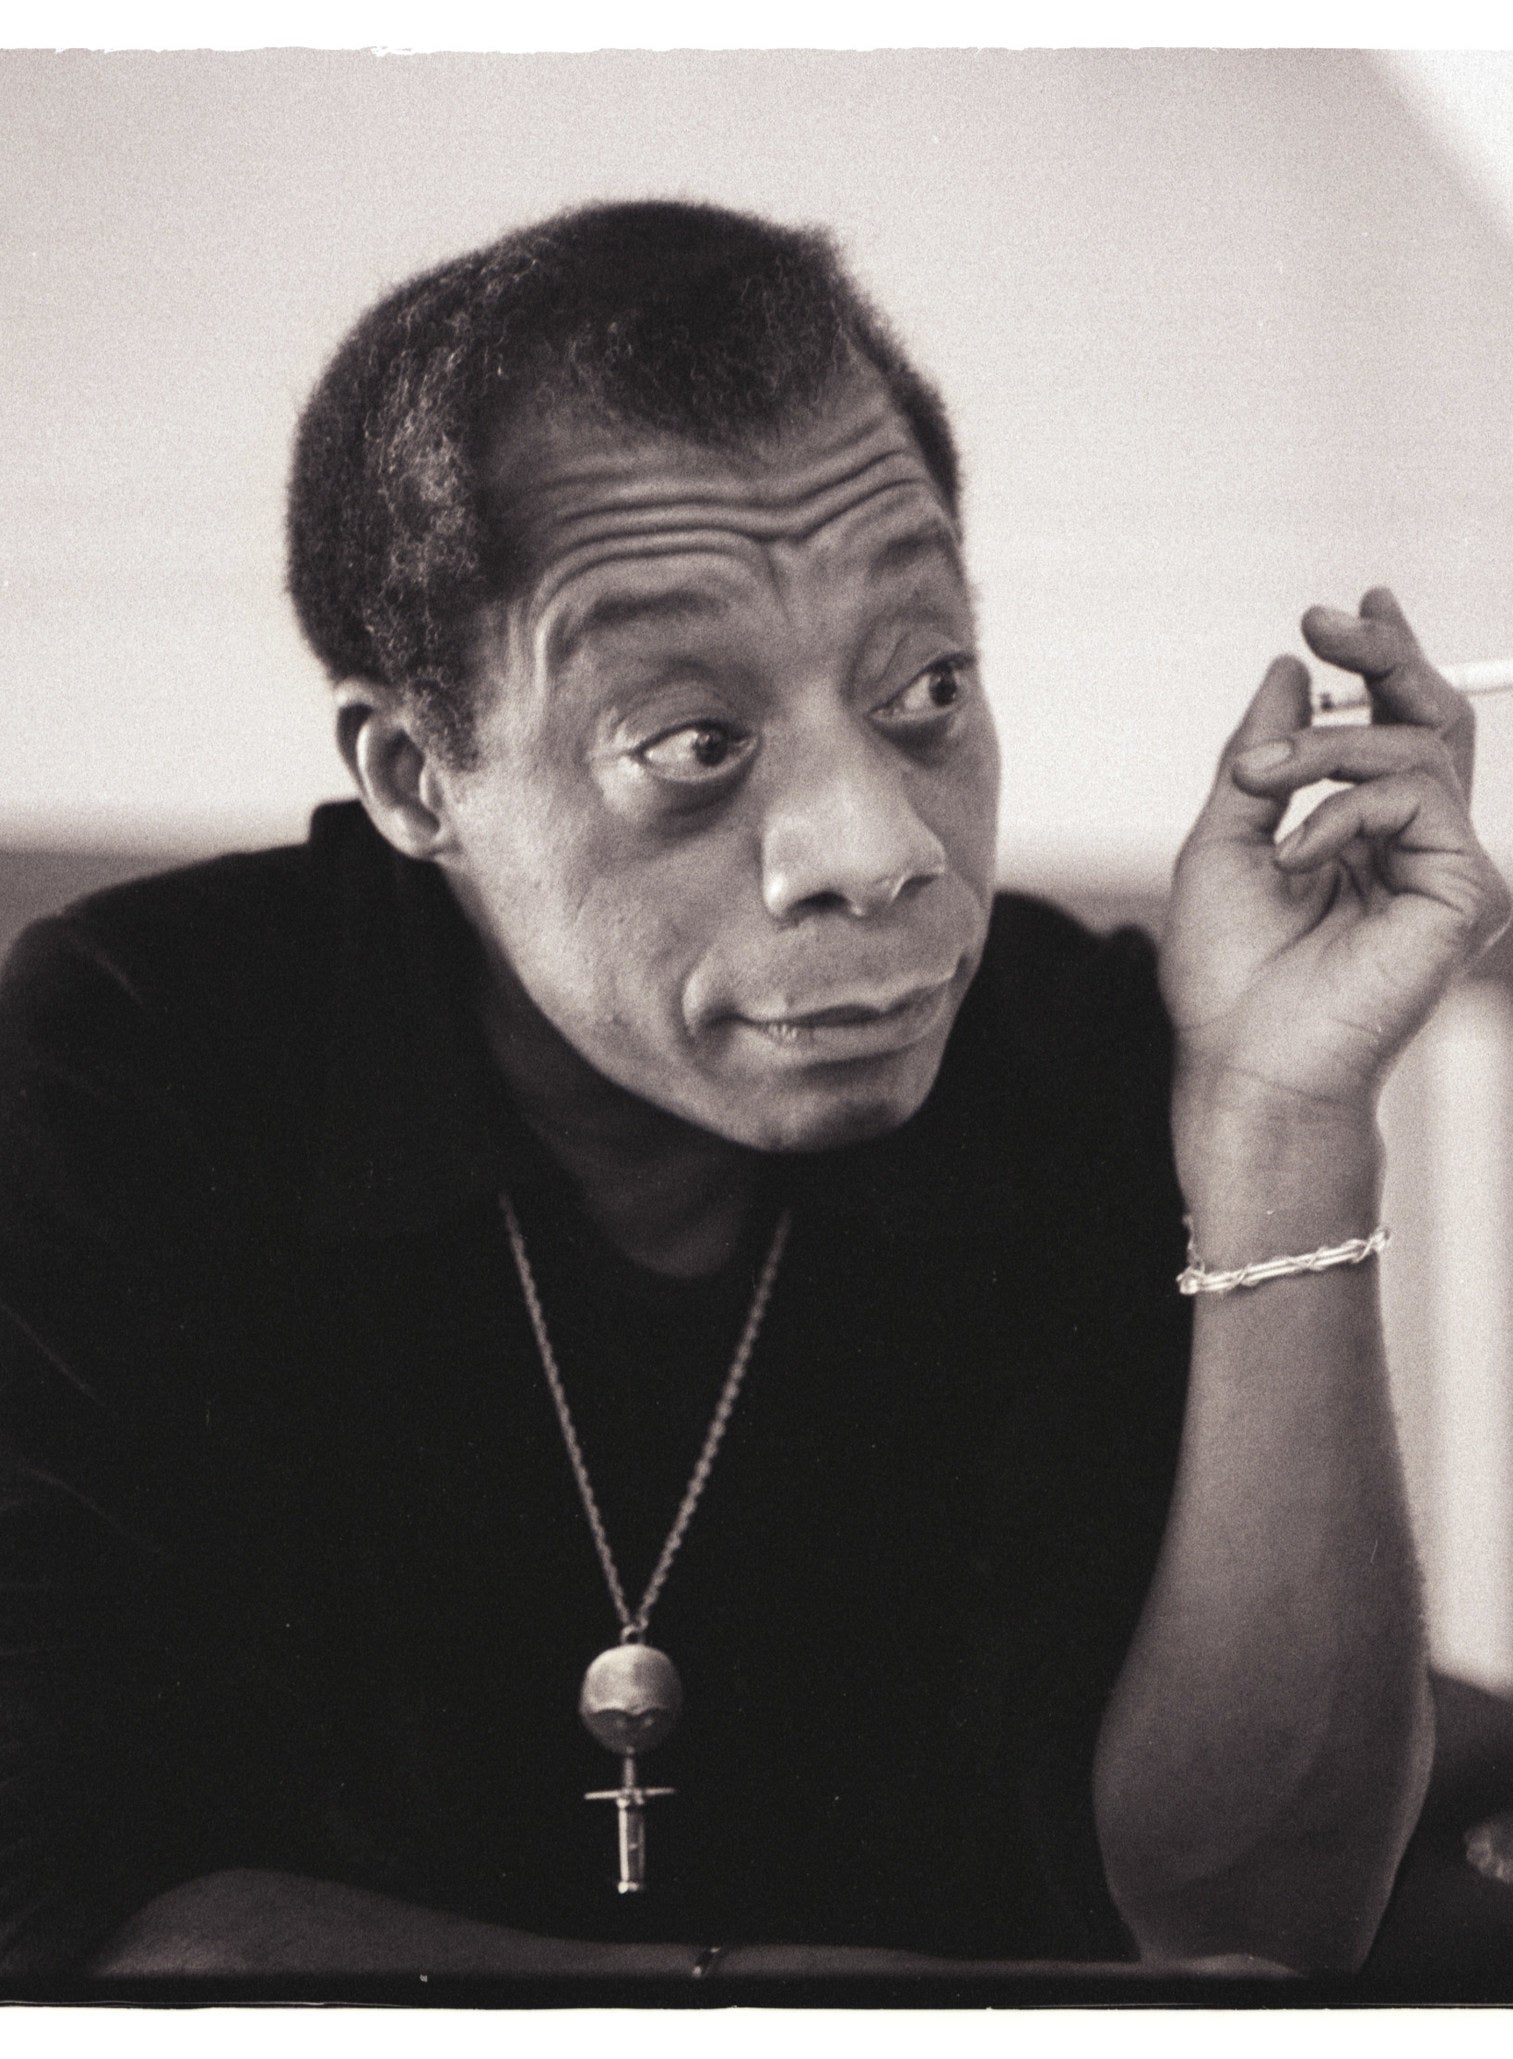 James Baldwin is shown